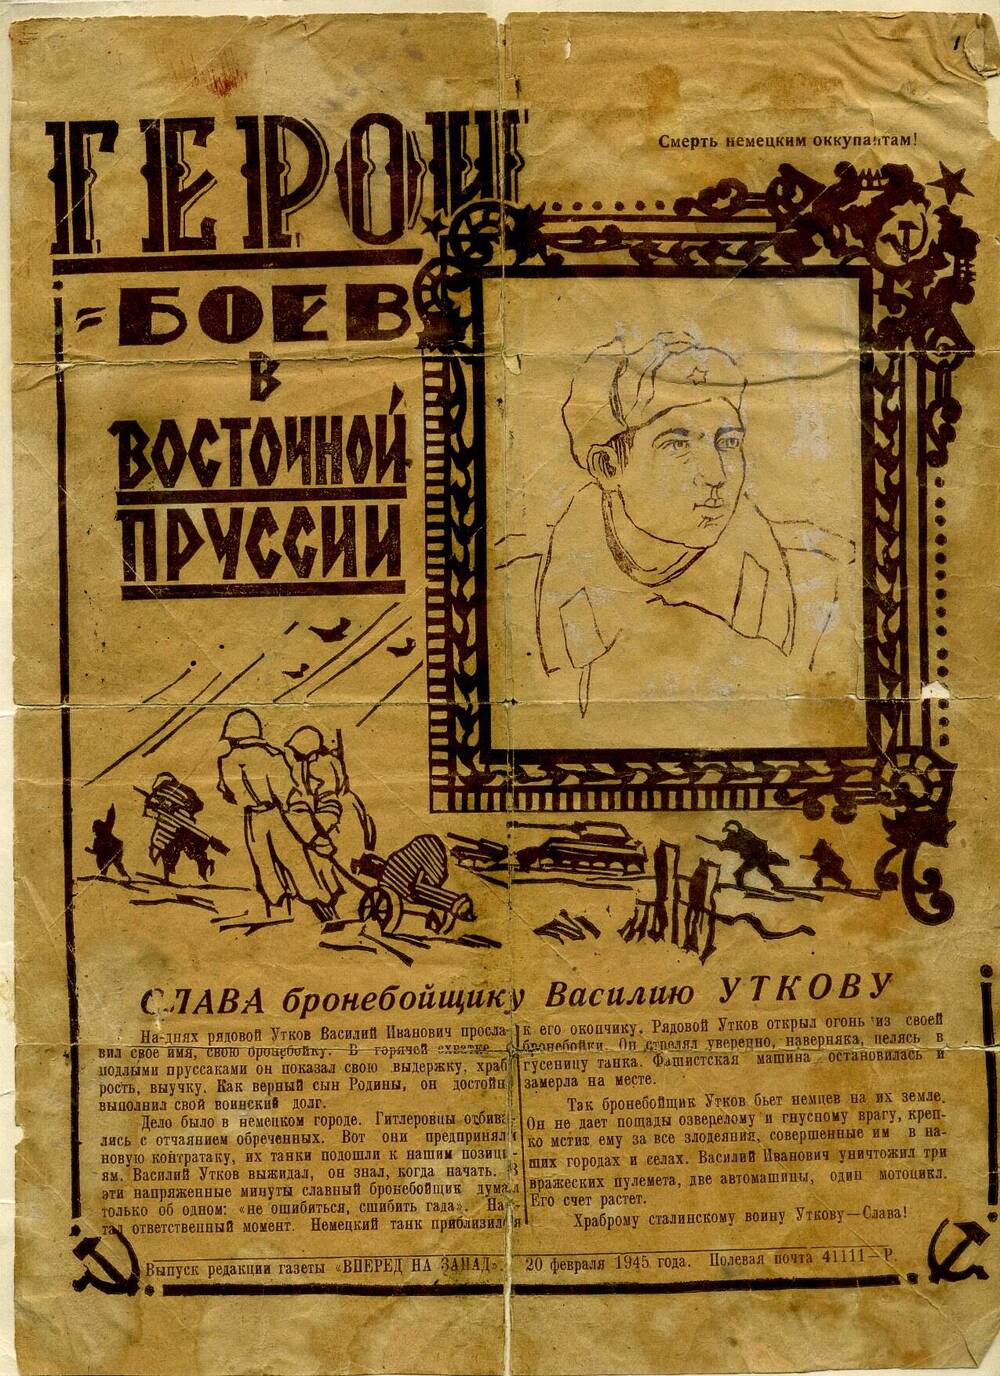 Листок газеты «Вперед на запад» от 20.02.1945 г., посвященный Василию Уткову